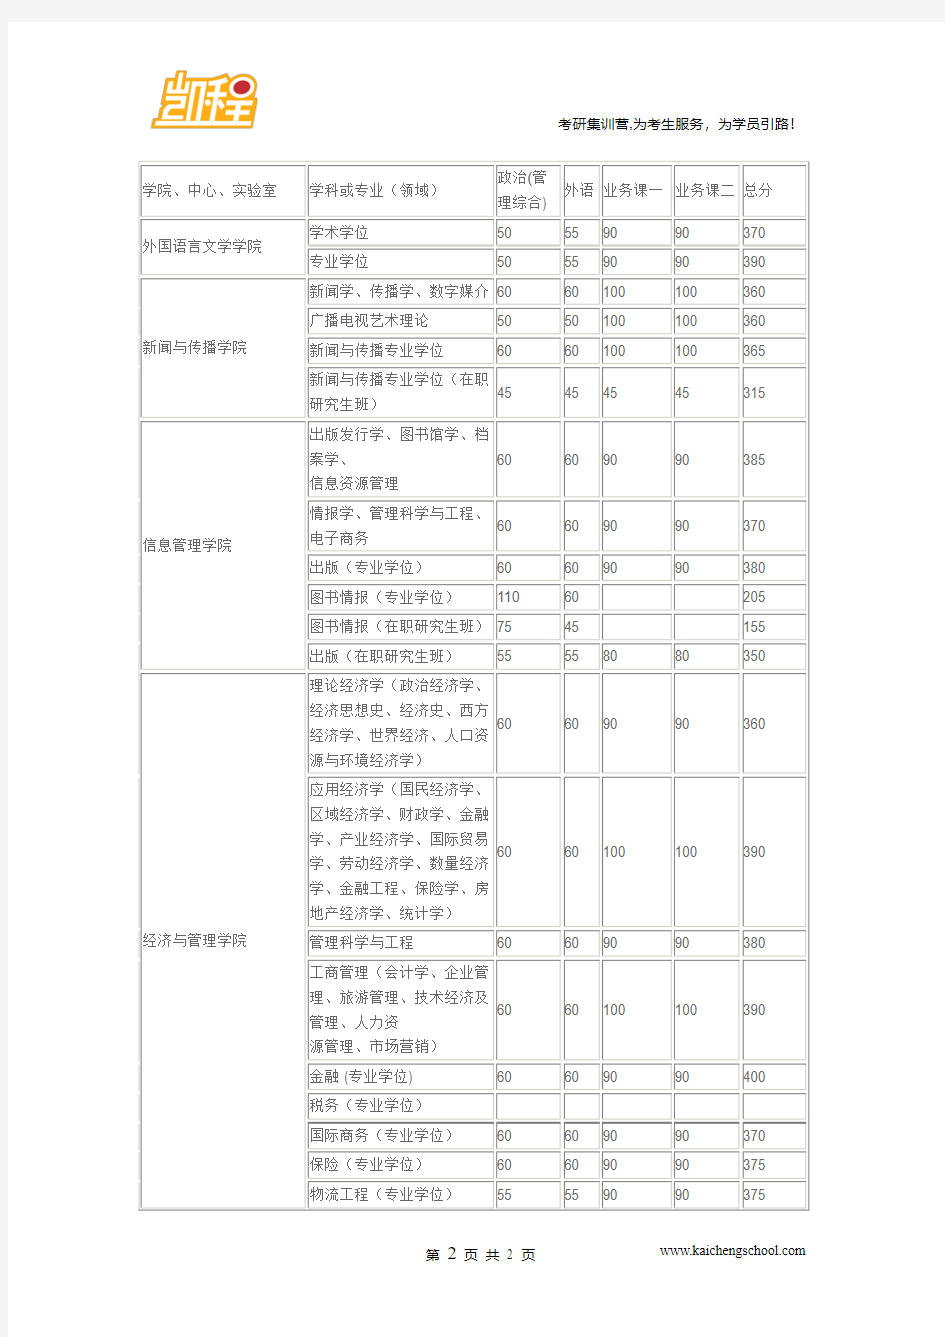 2015年武汉大学文化产业管理复试分数线是355分